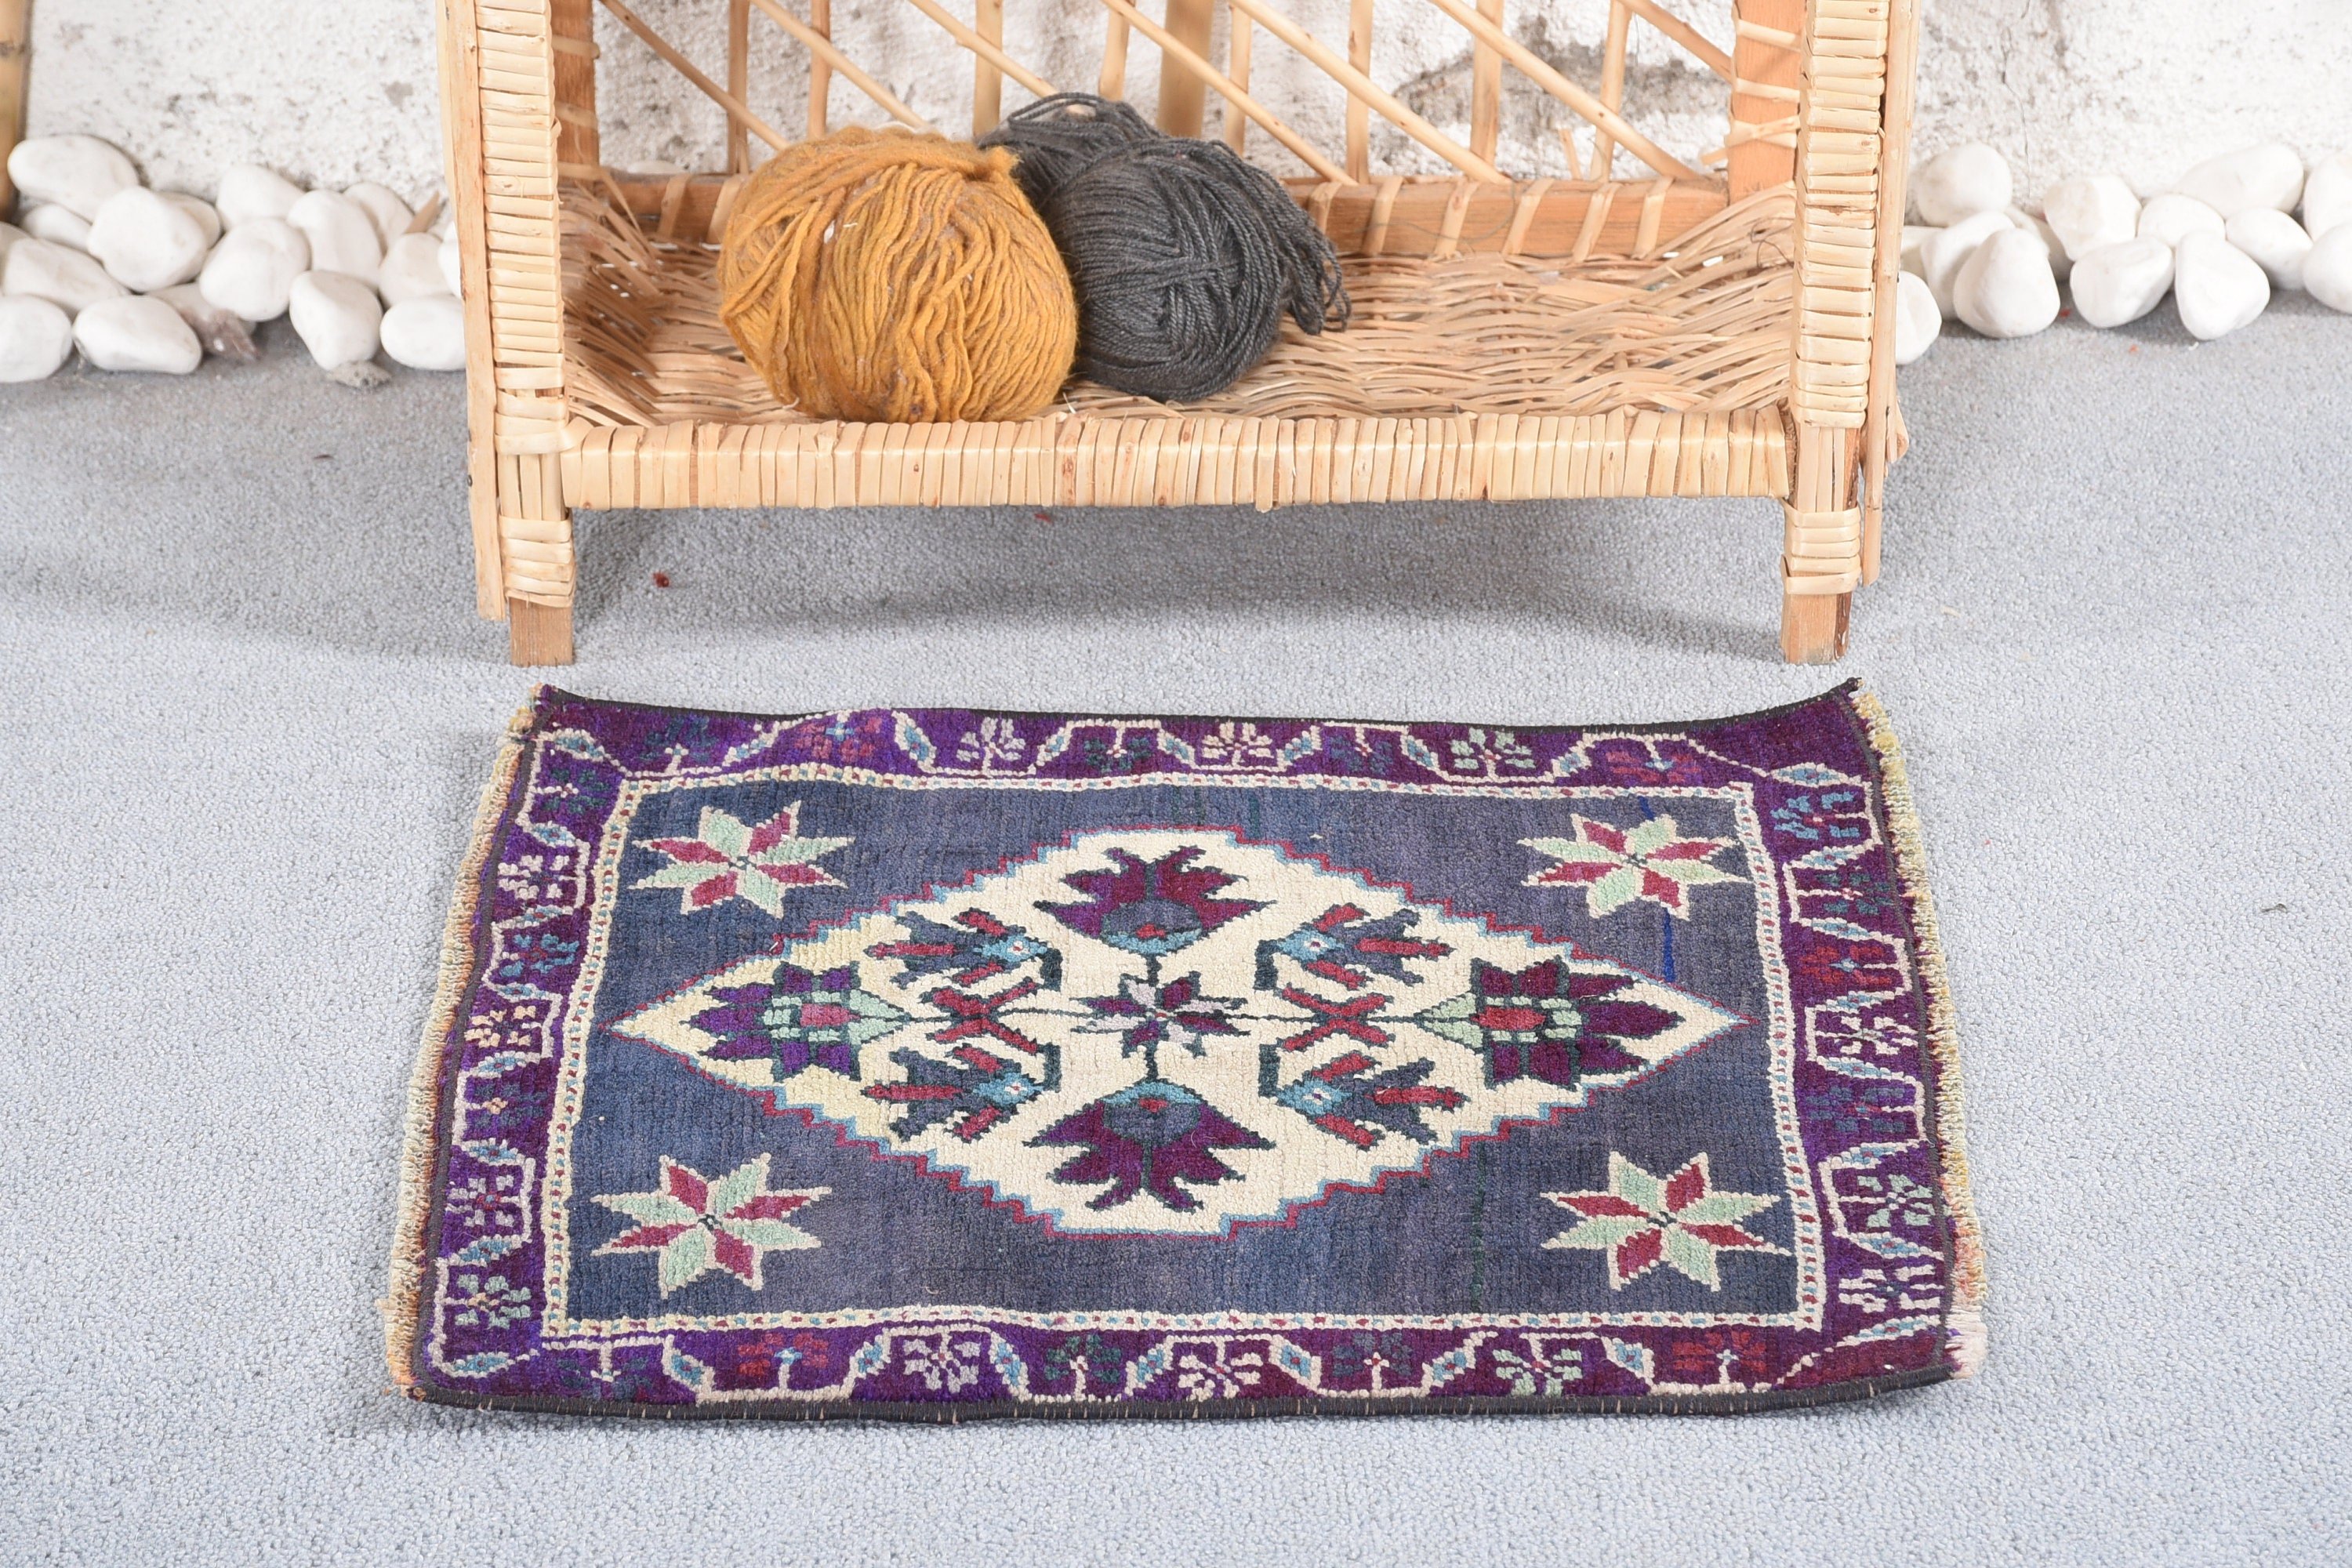 Vintage Rug, Purple Wool Rug, Old Rug, 1.6x1.7 ft Small Rug, Turkish Rugs, Rugs for Bathroom, Cool Rug, Door Mat Rug, Wool Rug, Entry Rug